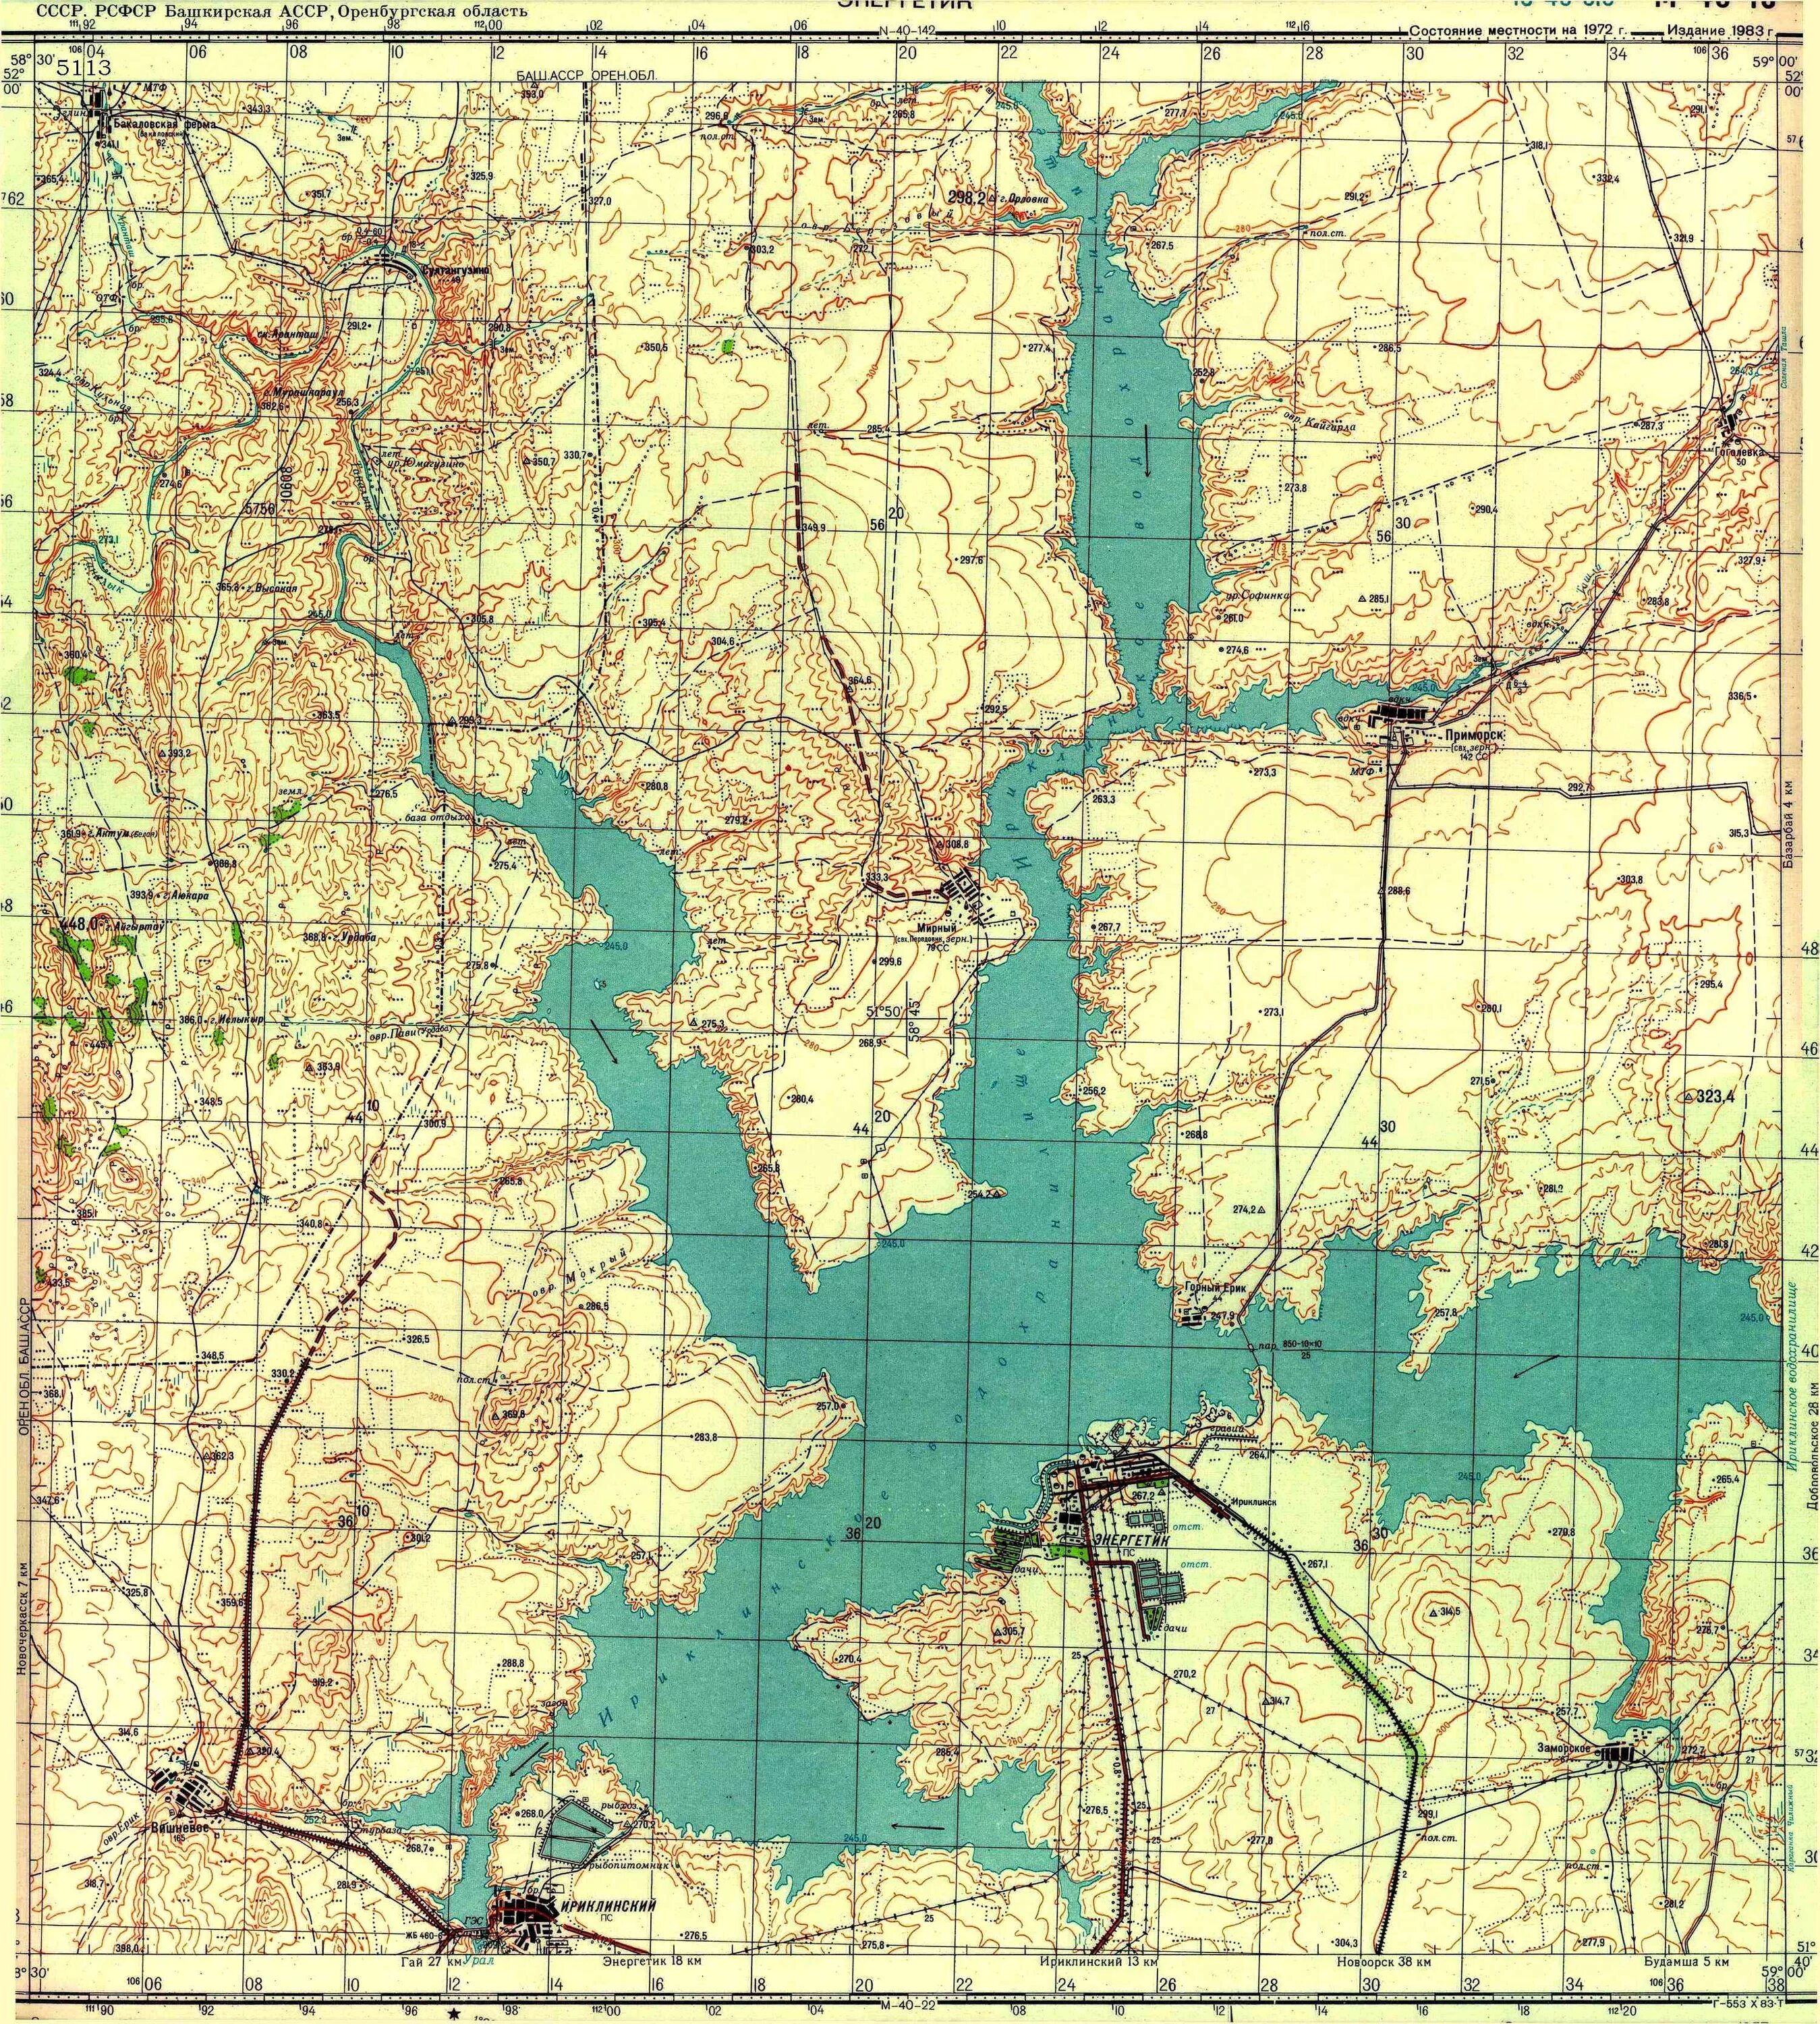 Магаданское водохранилище на карте